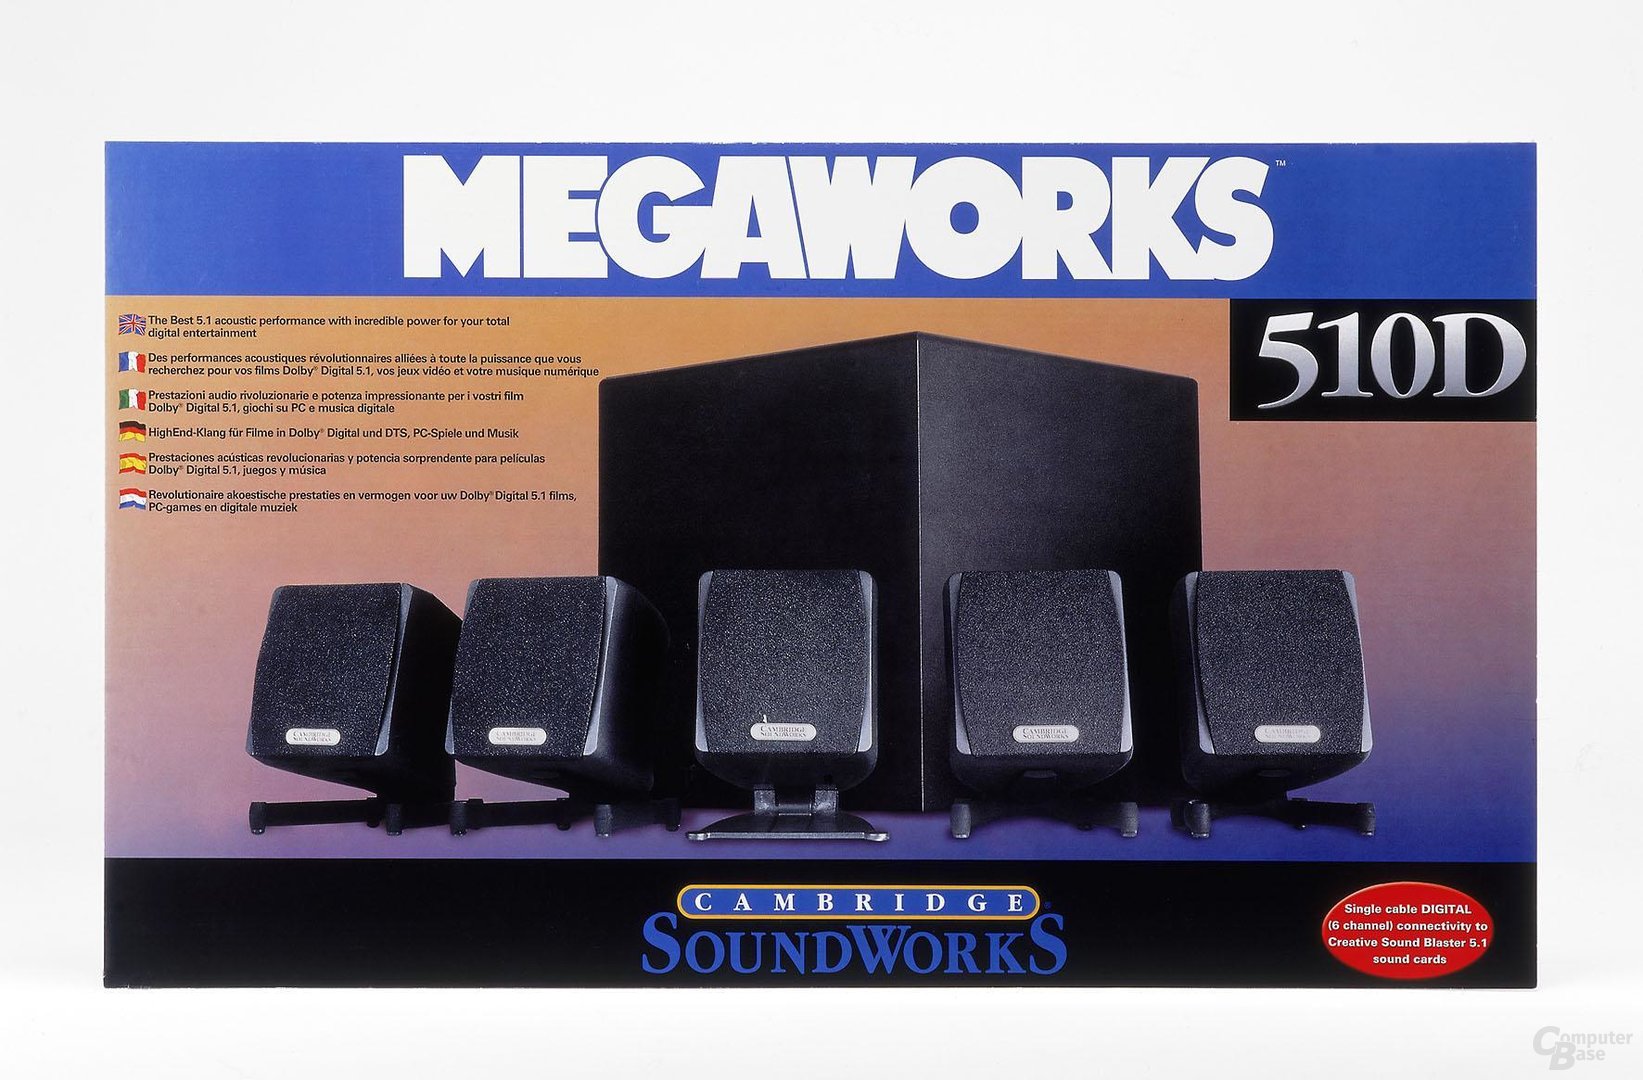 Mega Works 510D